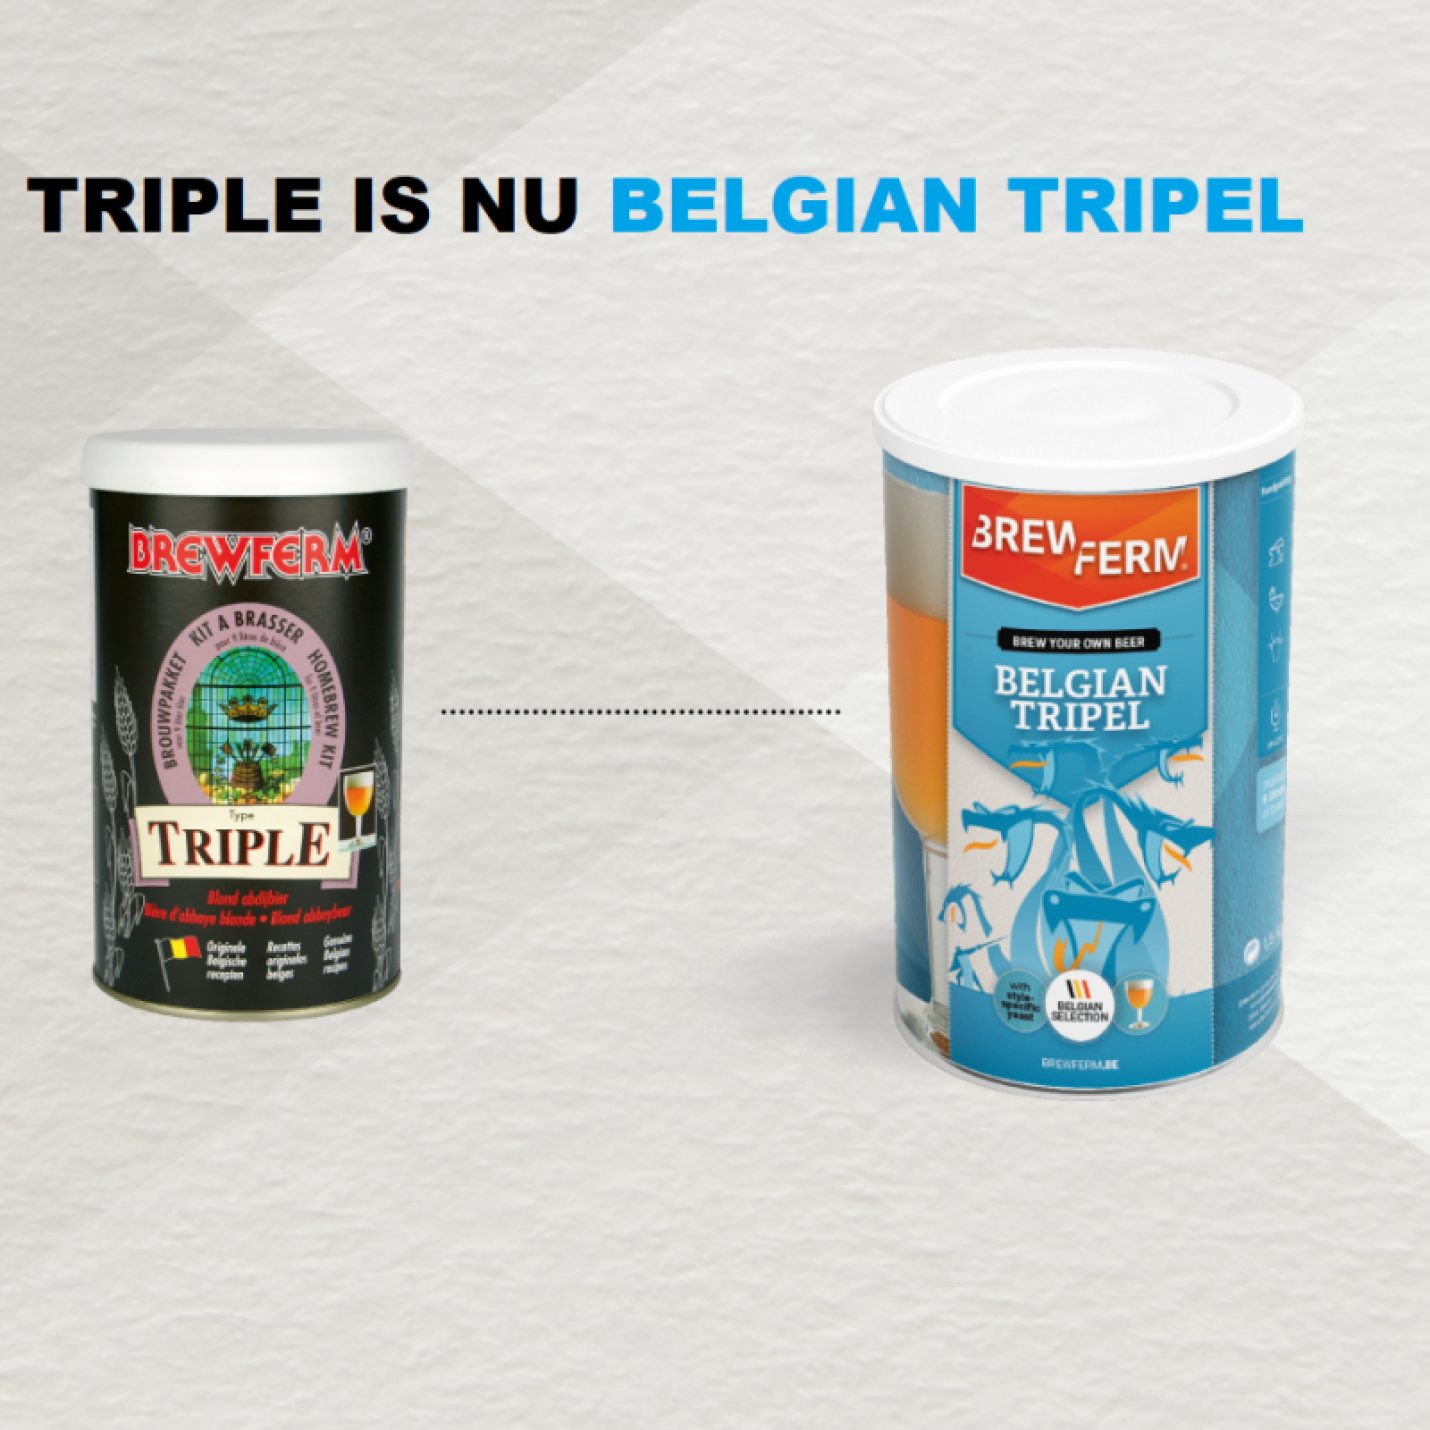 Belgian Triple (was Triple) 9 L Bierkit Brewferm